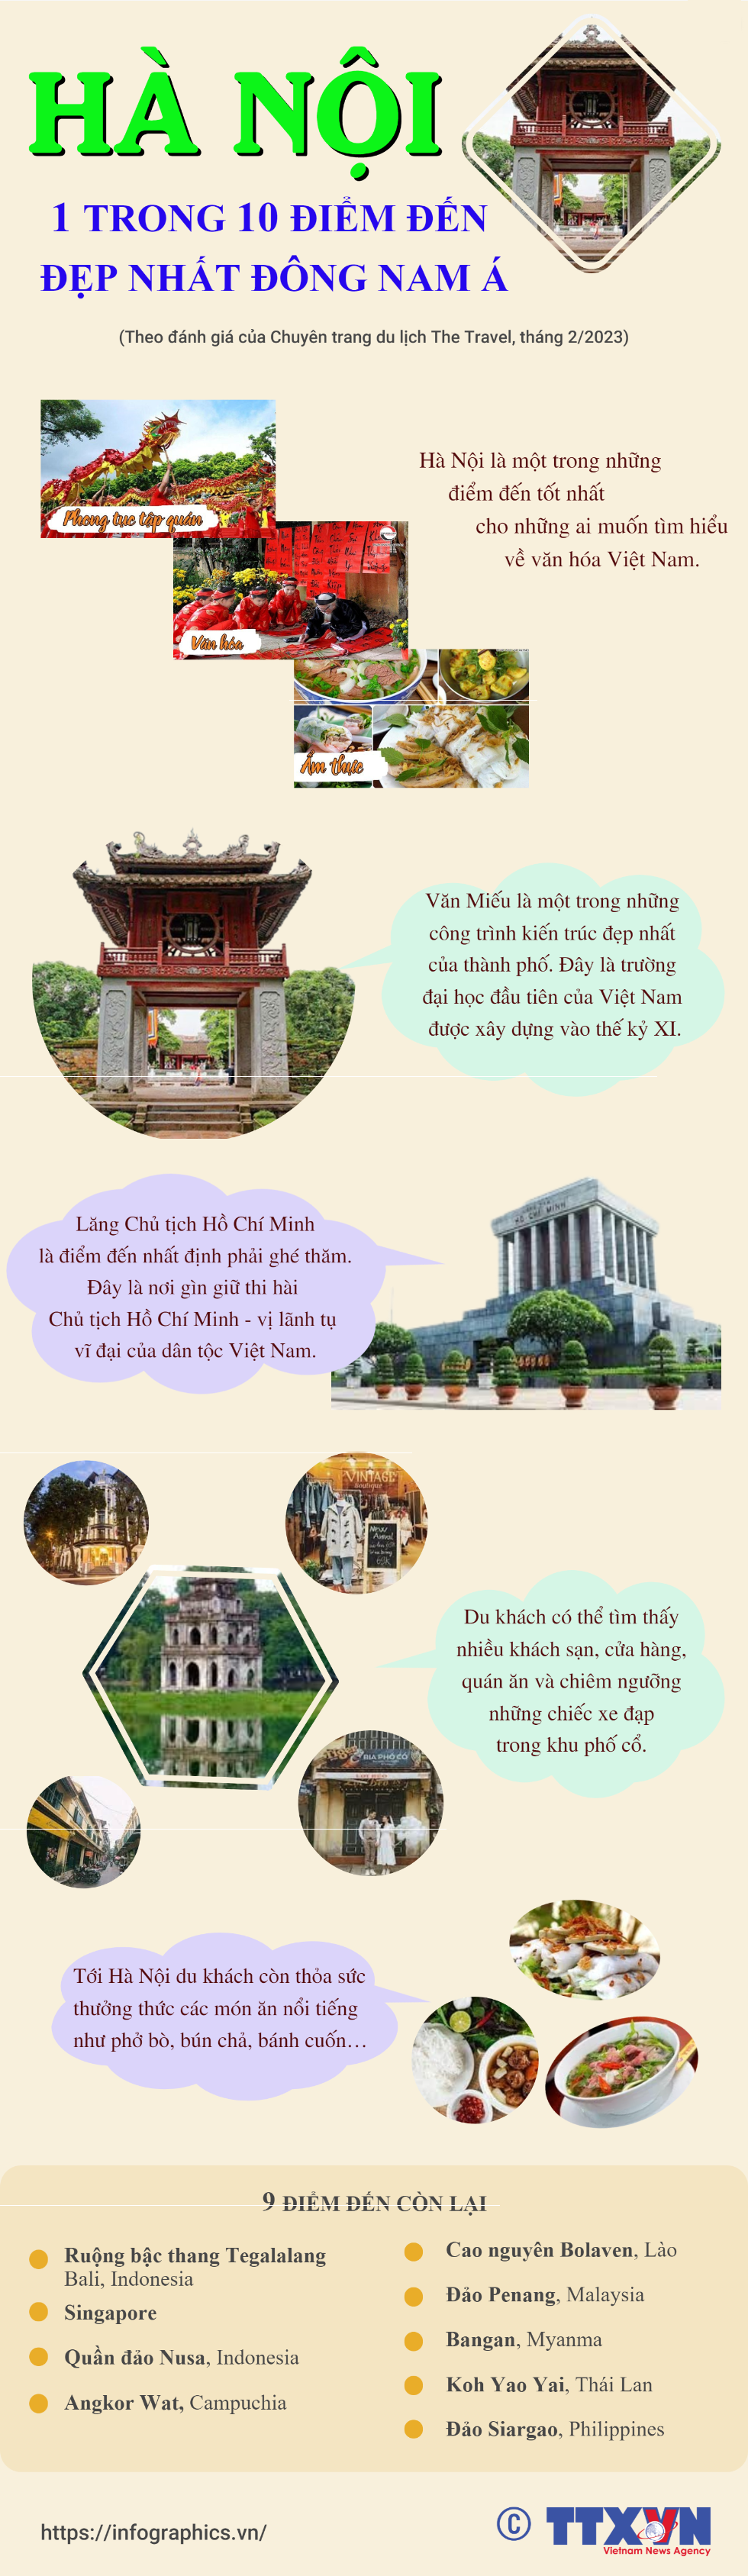 Hà Nội là 1 trong 10 điểm đến đẹp nhất Đông Nam Á